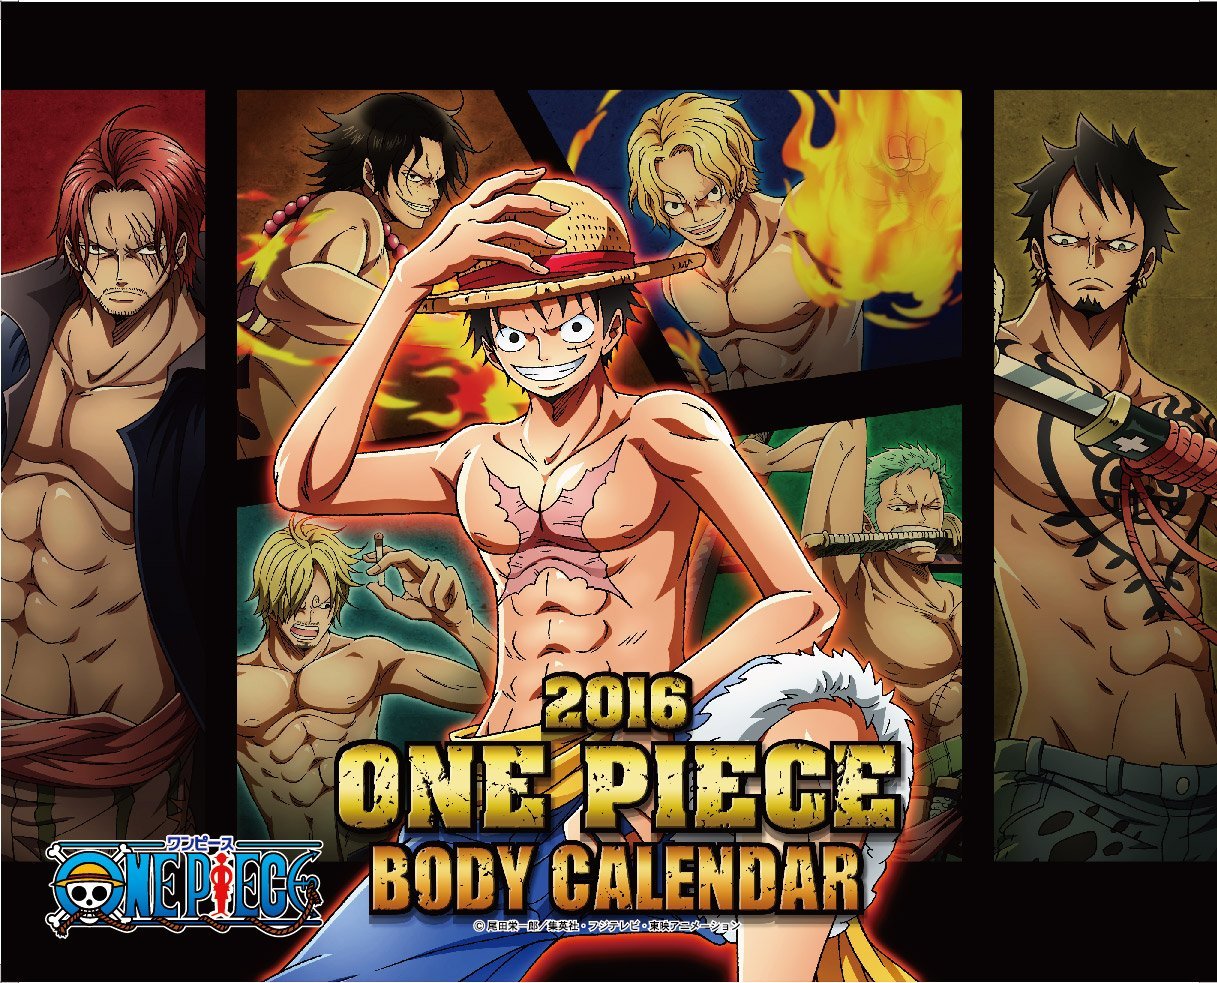 卓上 One Piece Body Calendar 2016 日本年曆